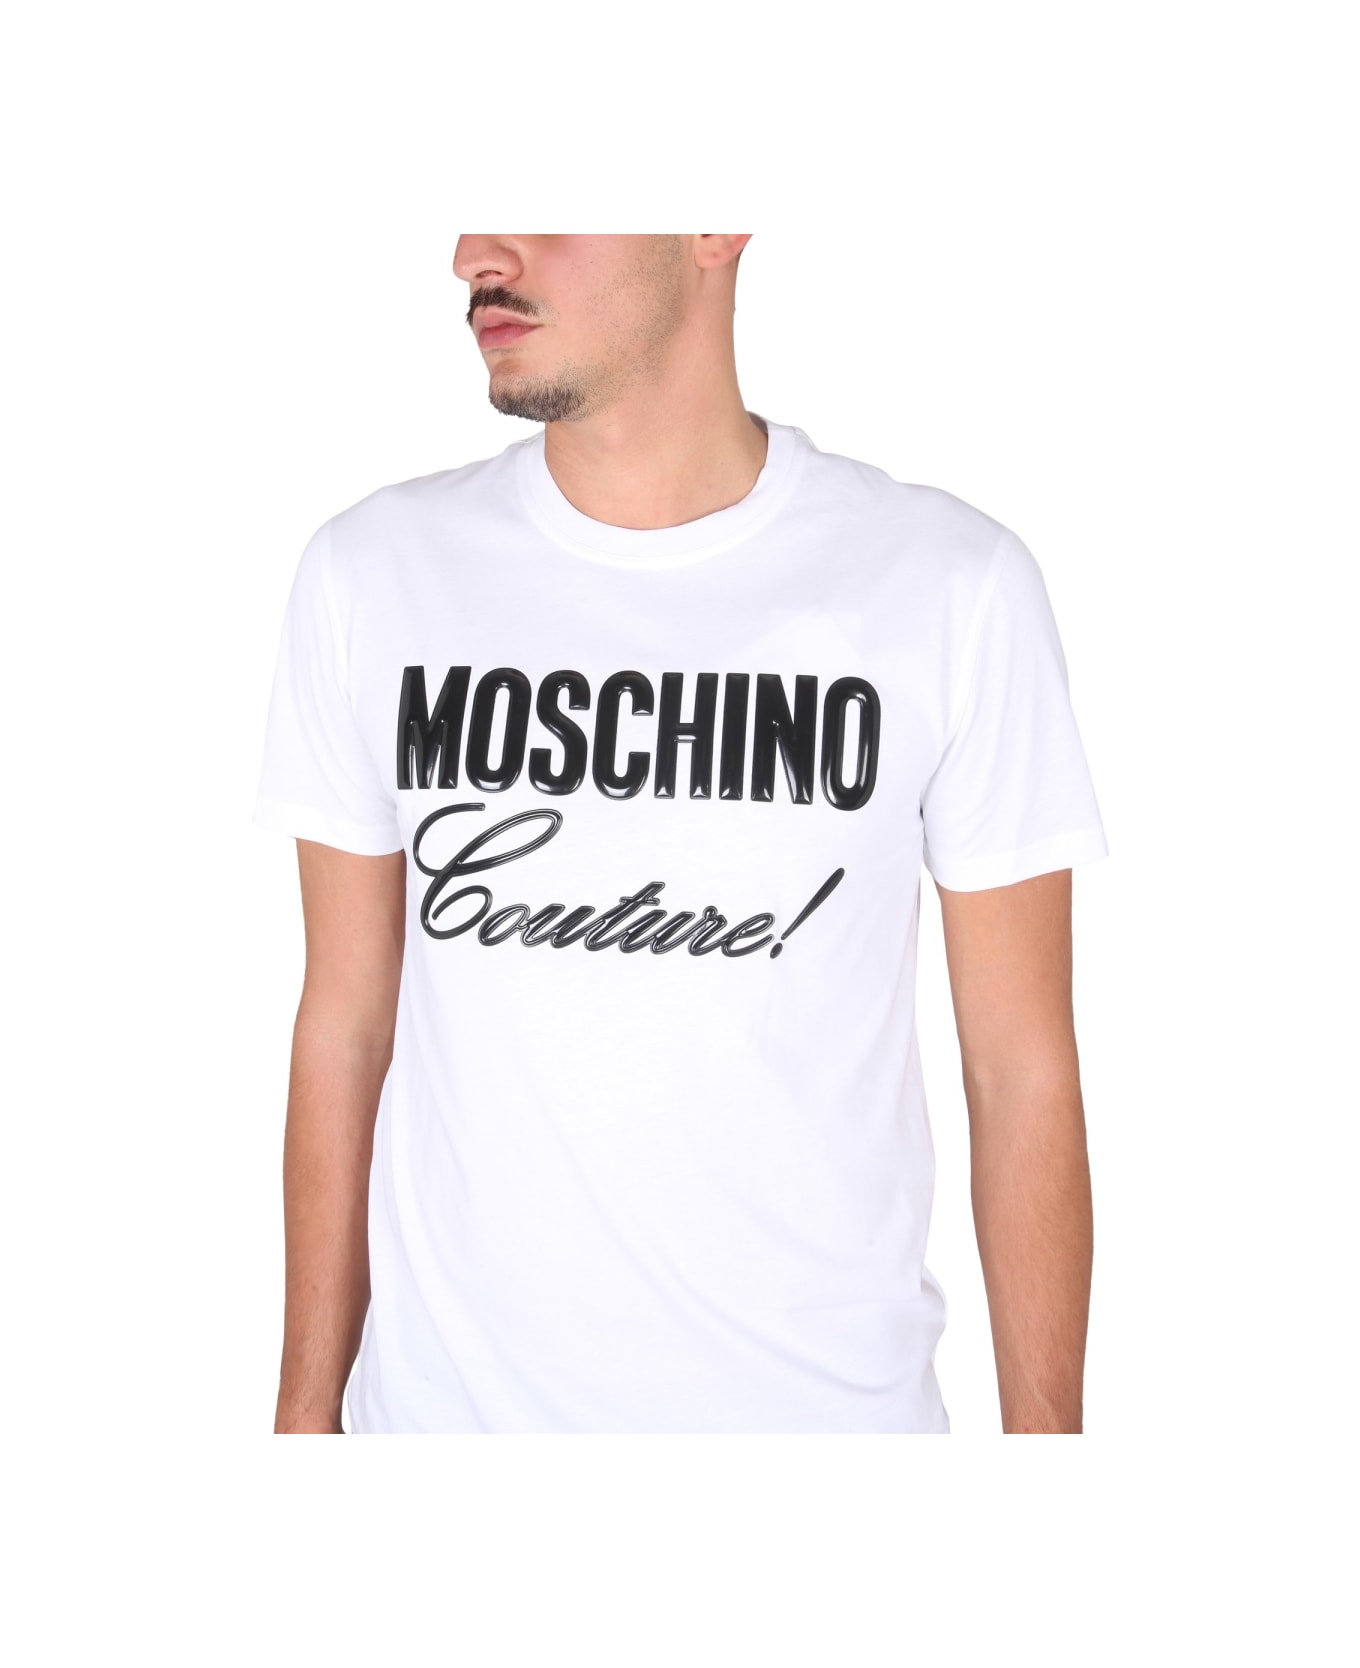 Moschino Crewneck T-shirt - WHITE